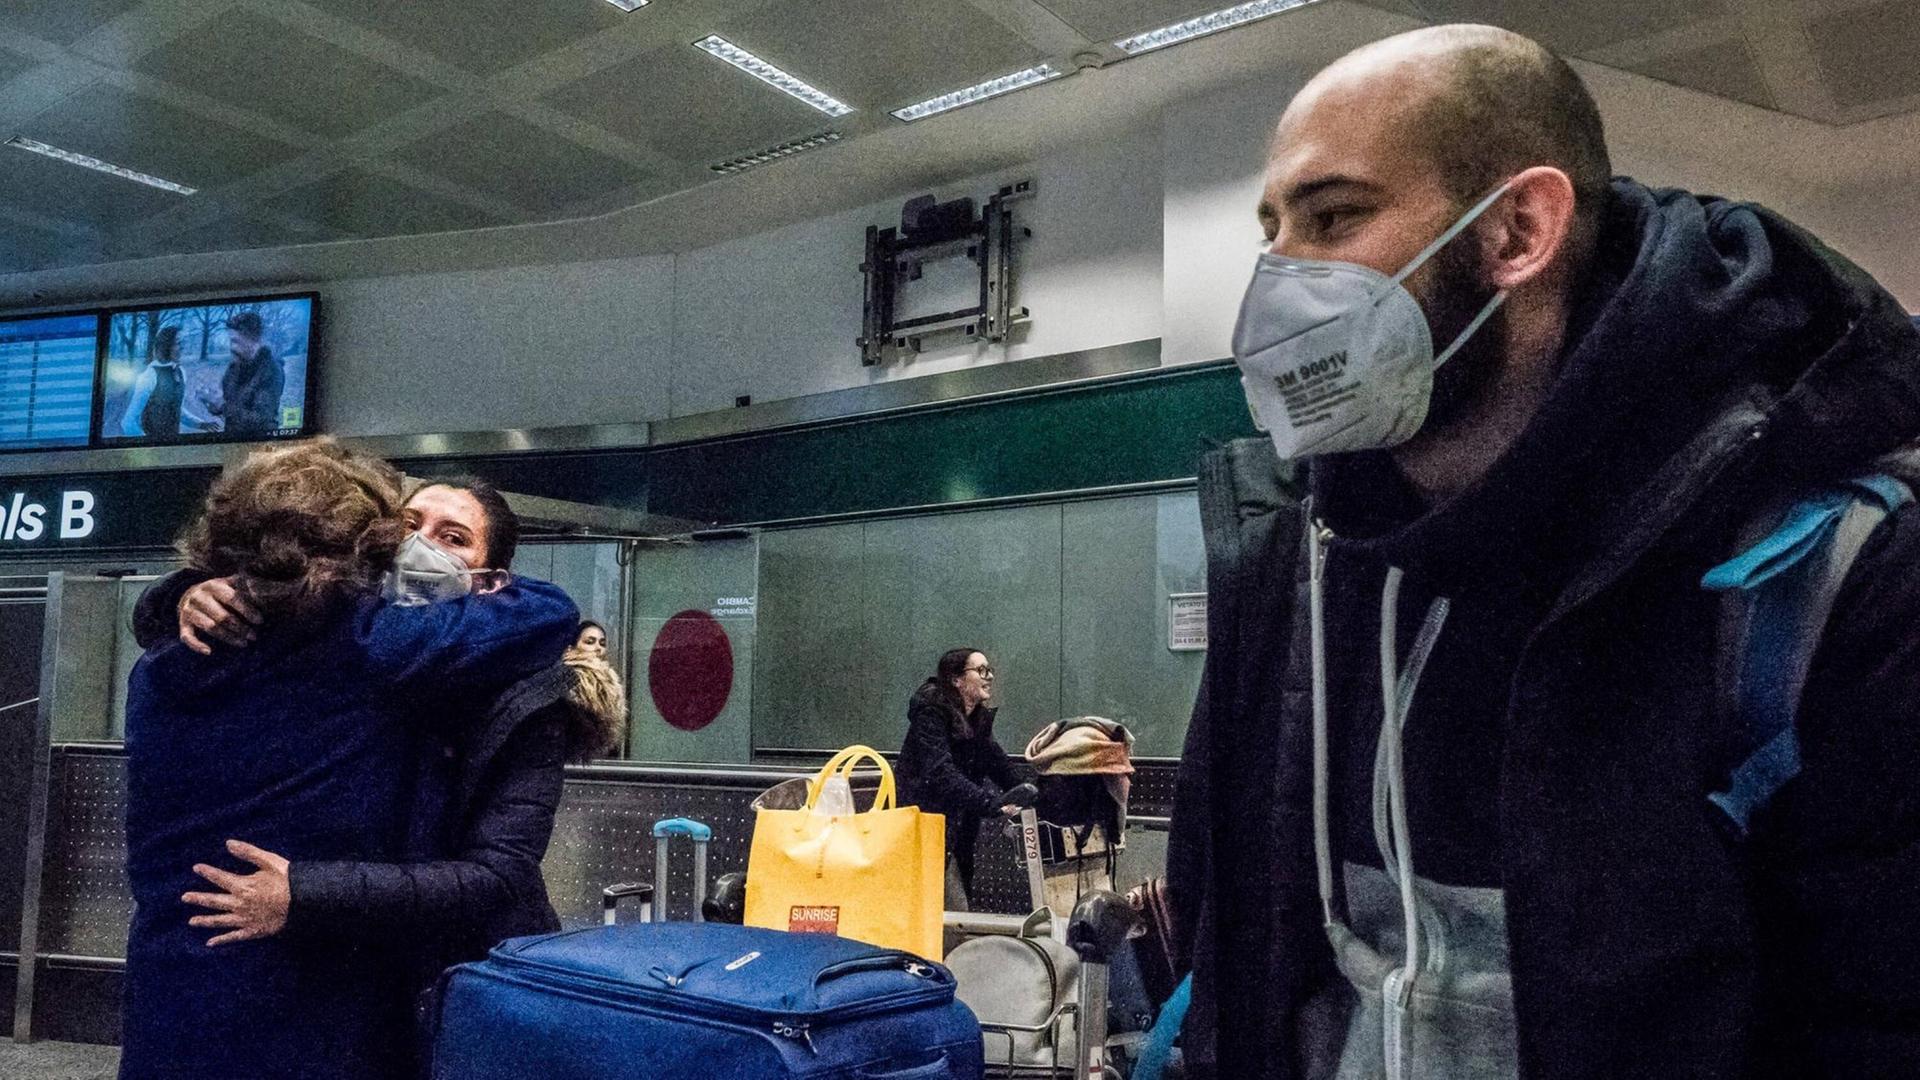 Auf dem Bild sind drei Menschen an einem Flughafen. Ein Mann mit einem Mundschutz steht im Vordergrund. Im Hintergrund stehen zwei weitere Menschen, sie umarmen sich. Sie tragen ebenfalls einen Mundschutz.